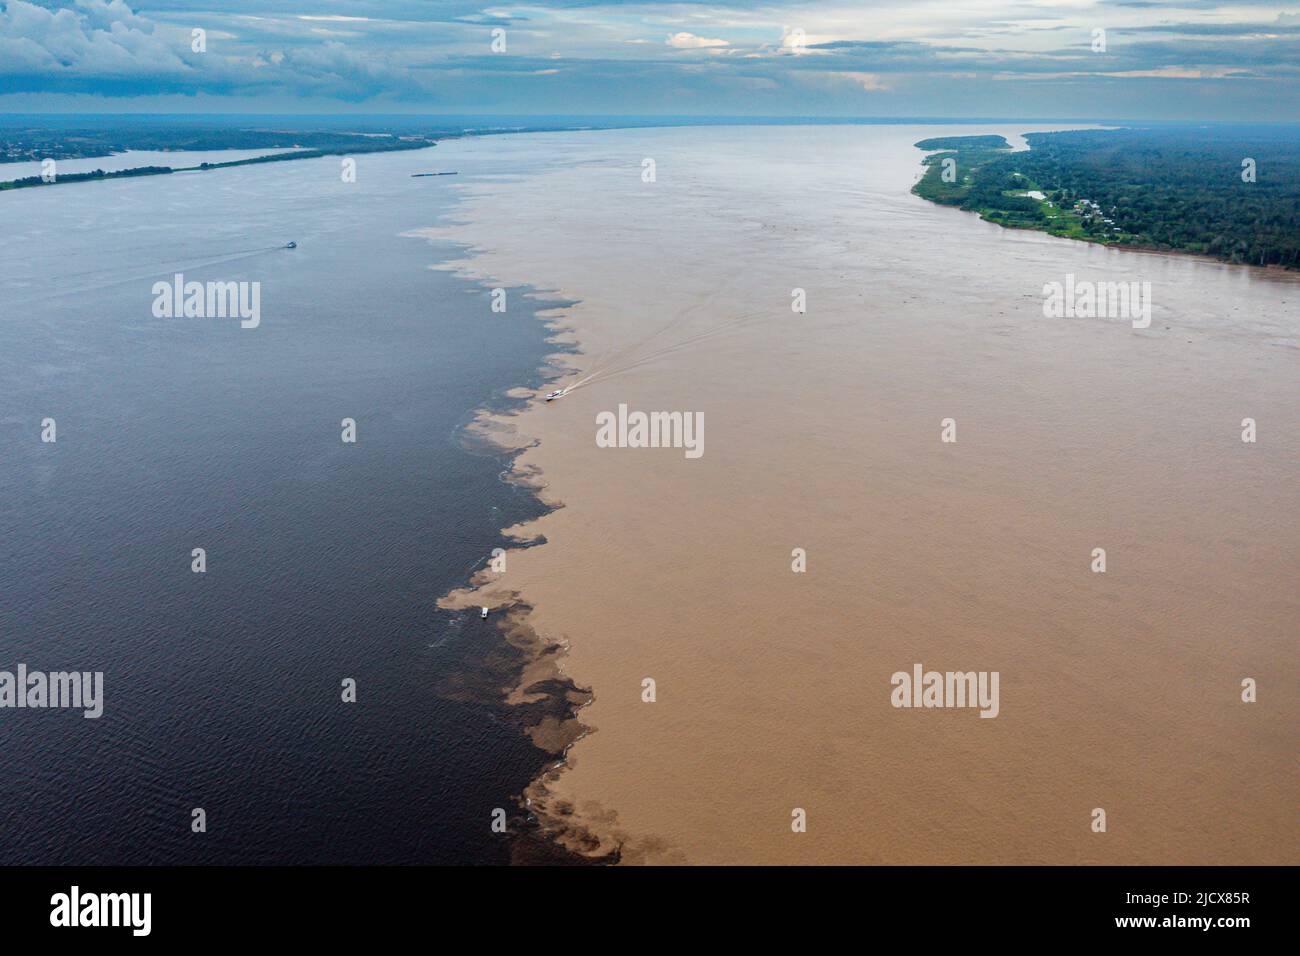 Confluencia del Río Negro y el Amazonas, Manaus, estado de Amazonas, Brasil, Sudamérica Foto de stock